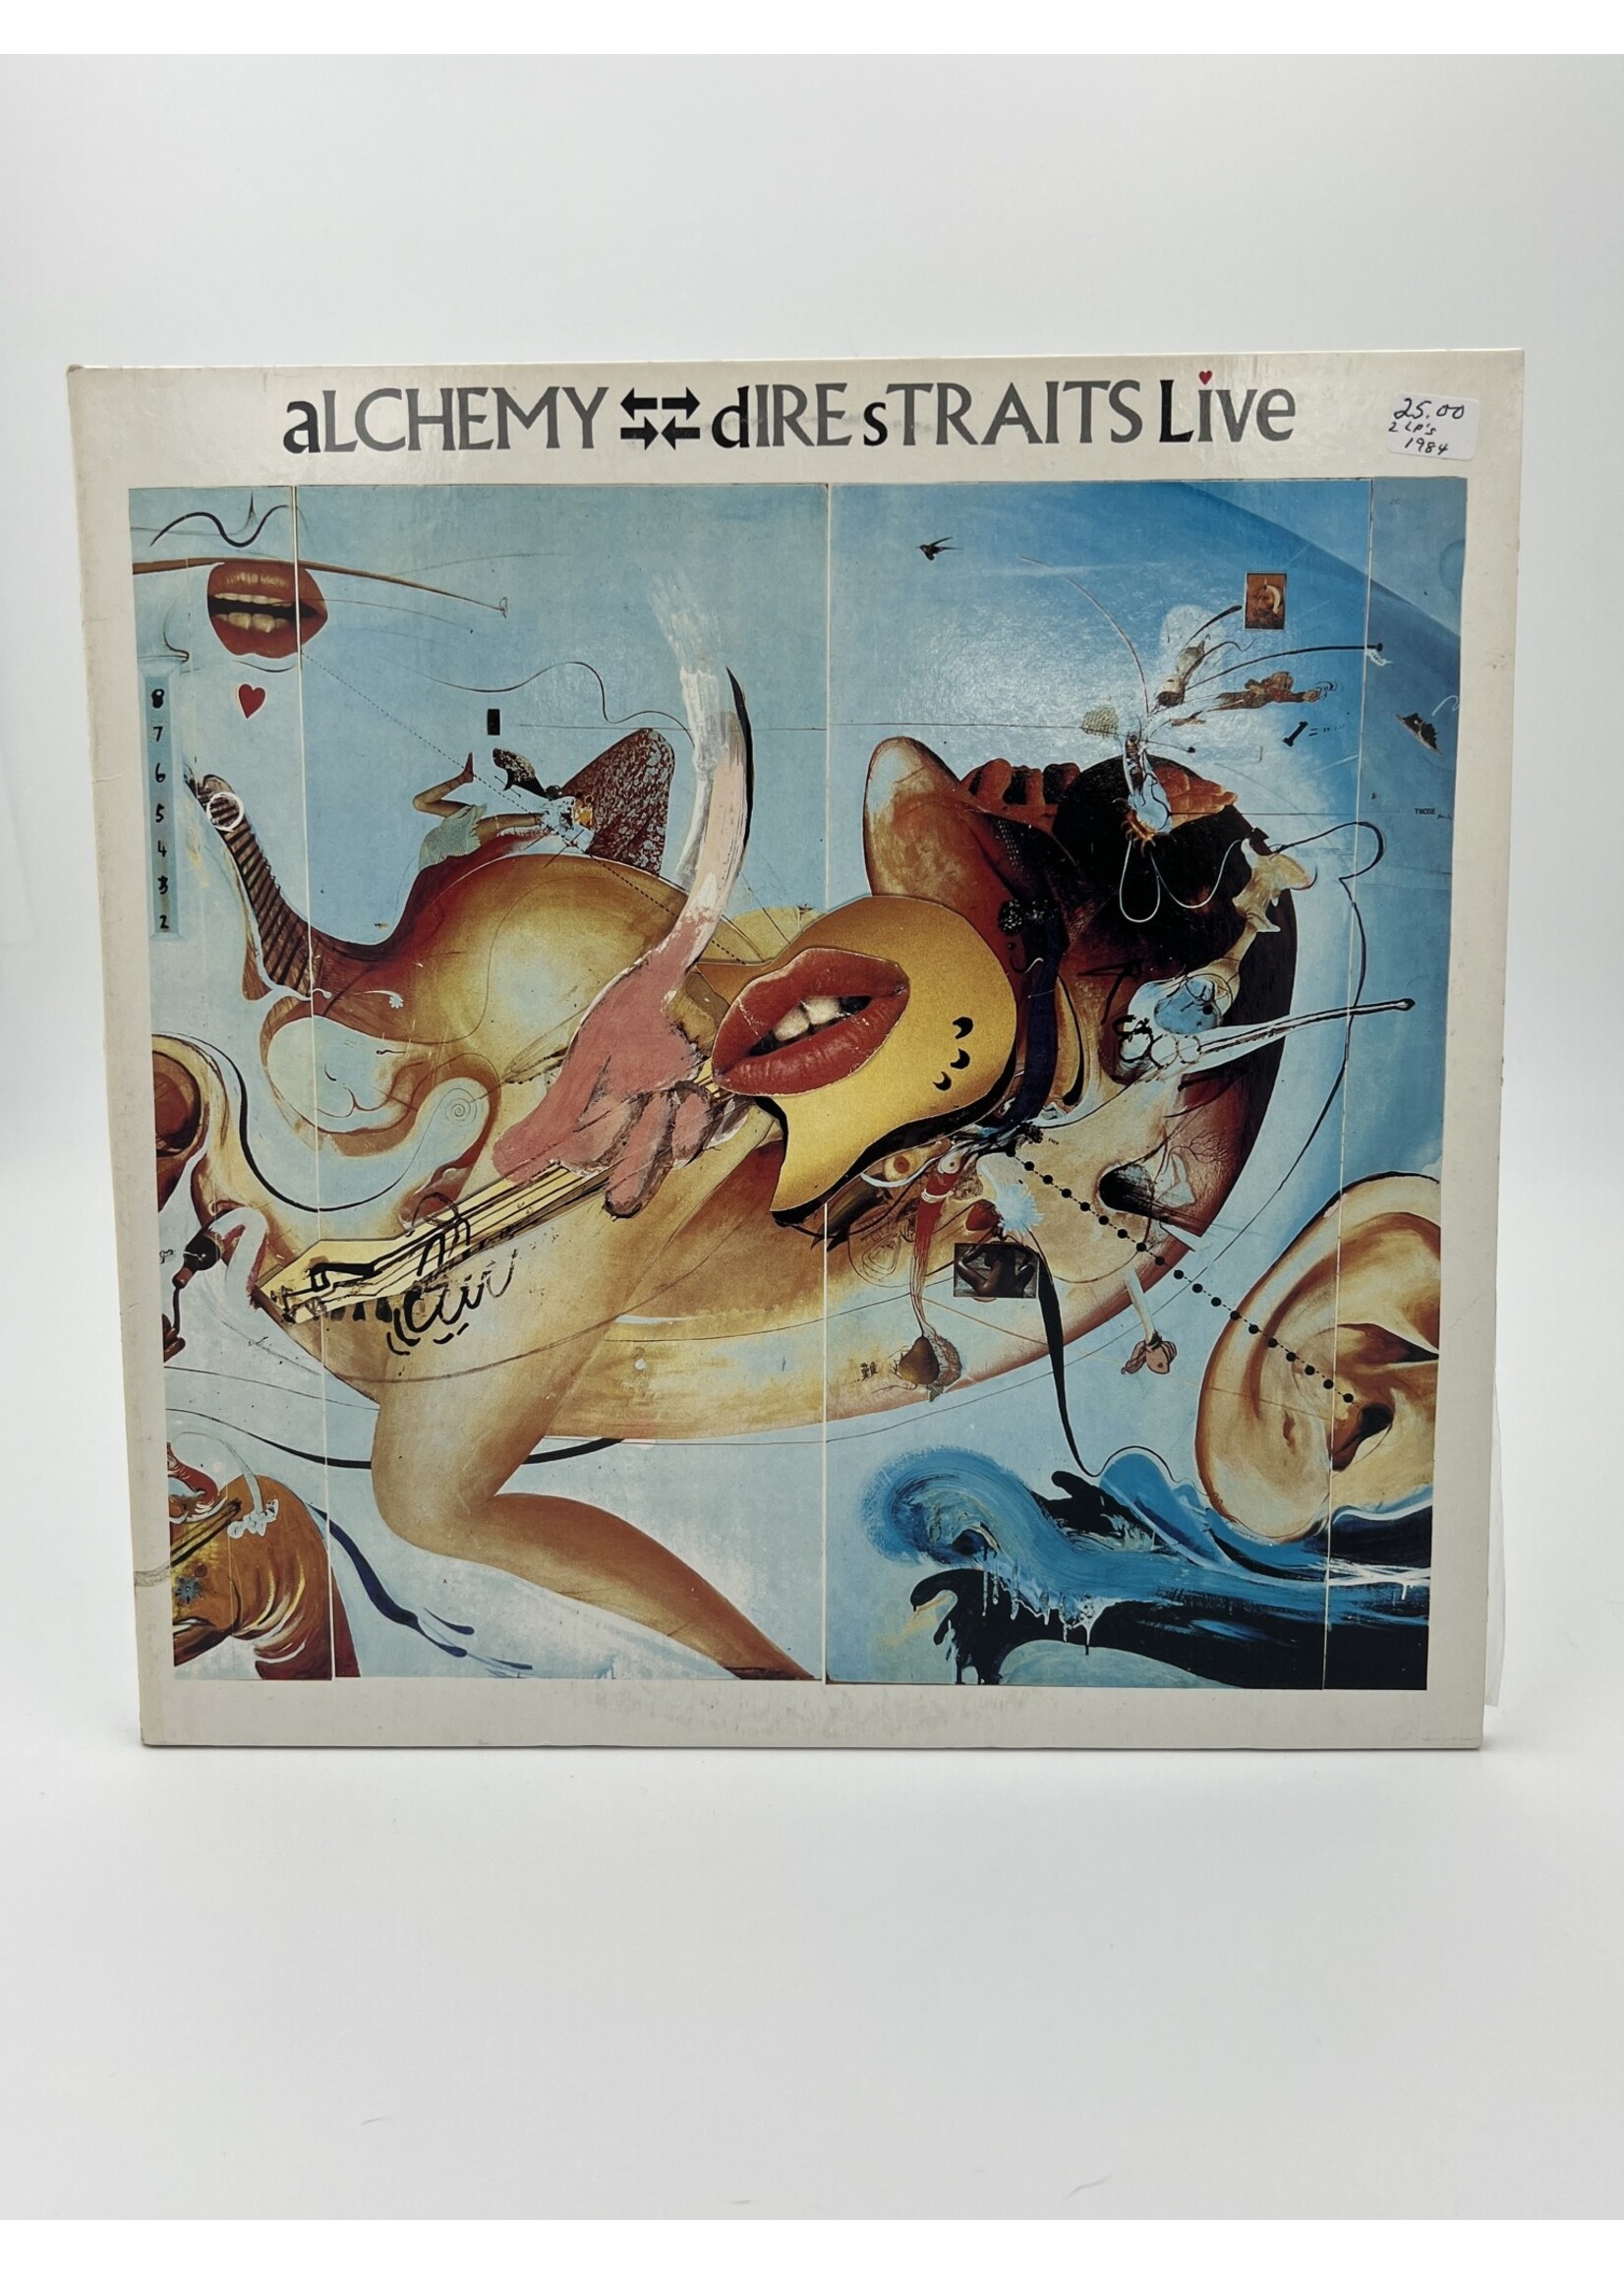 LP   Dire Straits Live Alchemy 2 LP Record